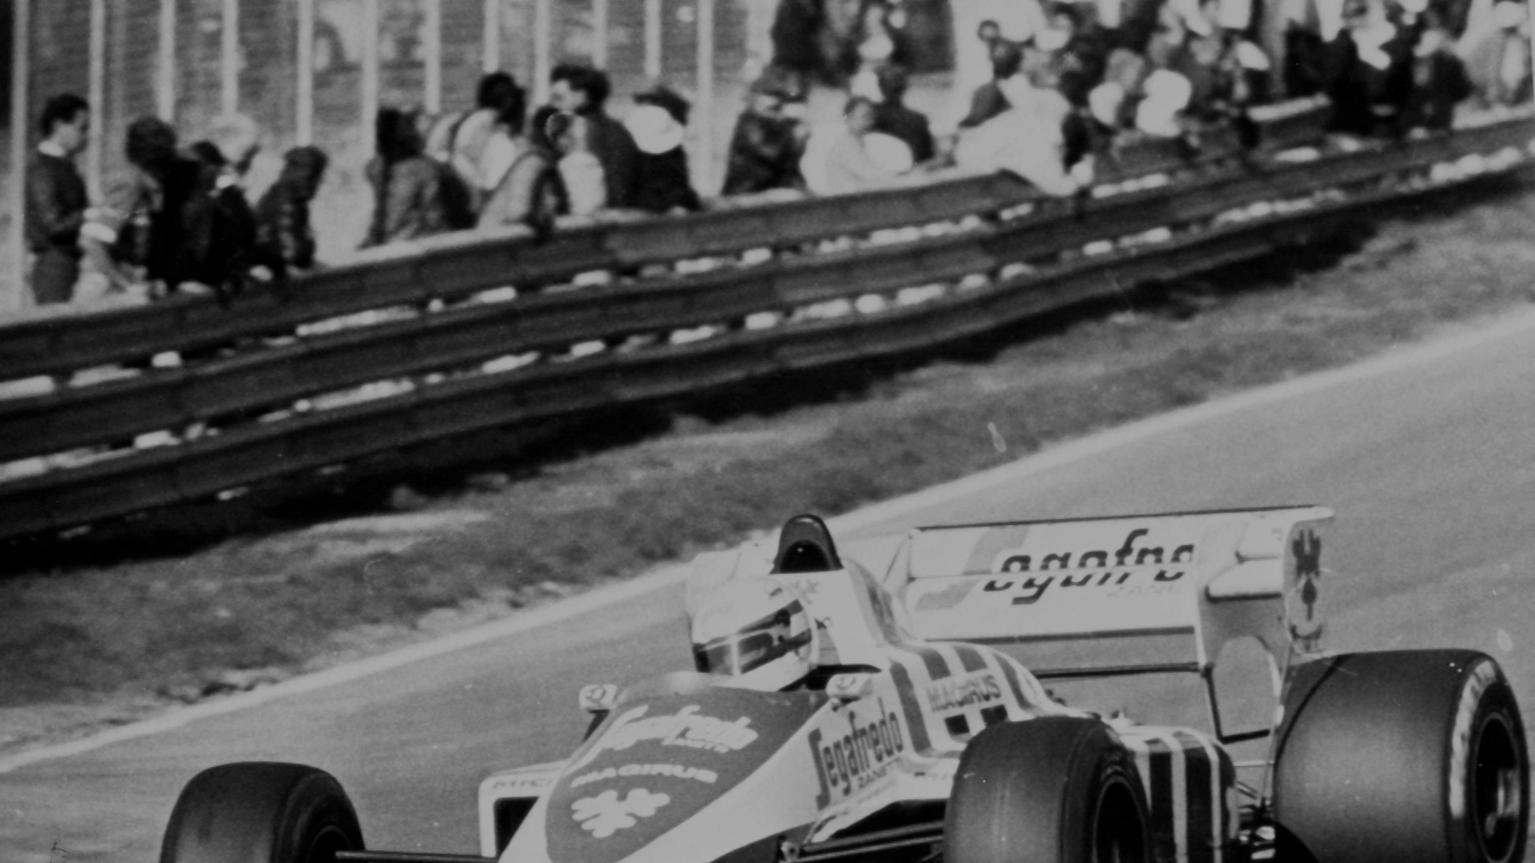 Ayrton Senna, escluso dalle qualifiche a Imola nel 1984, reagisce con determinazione e conquista tre vittorie consecutive dal 1988 al 1991, diventando un'icona della pista. Tragedia nel 1994 al Tamburello.